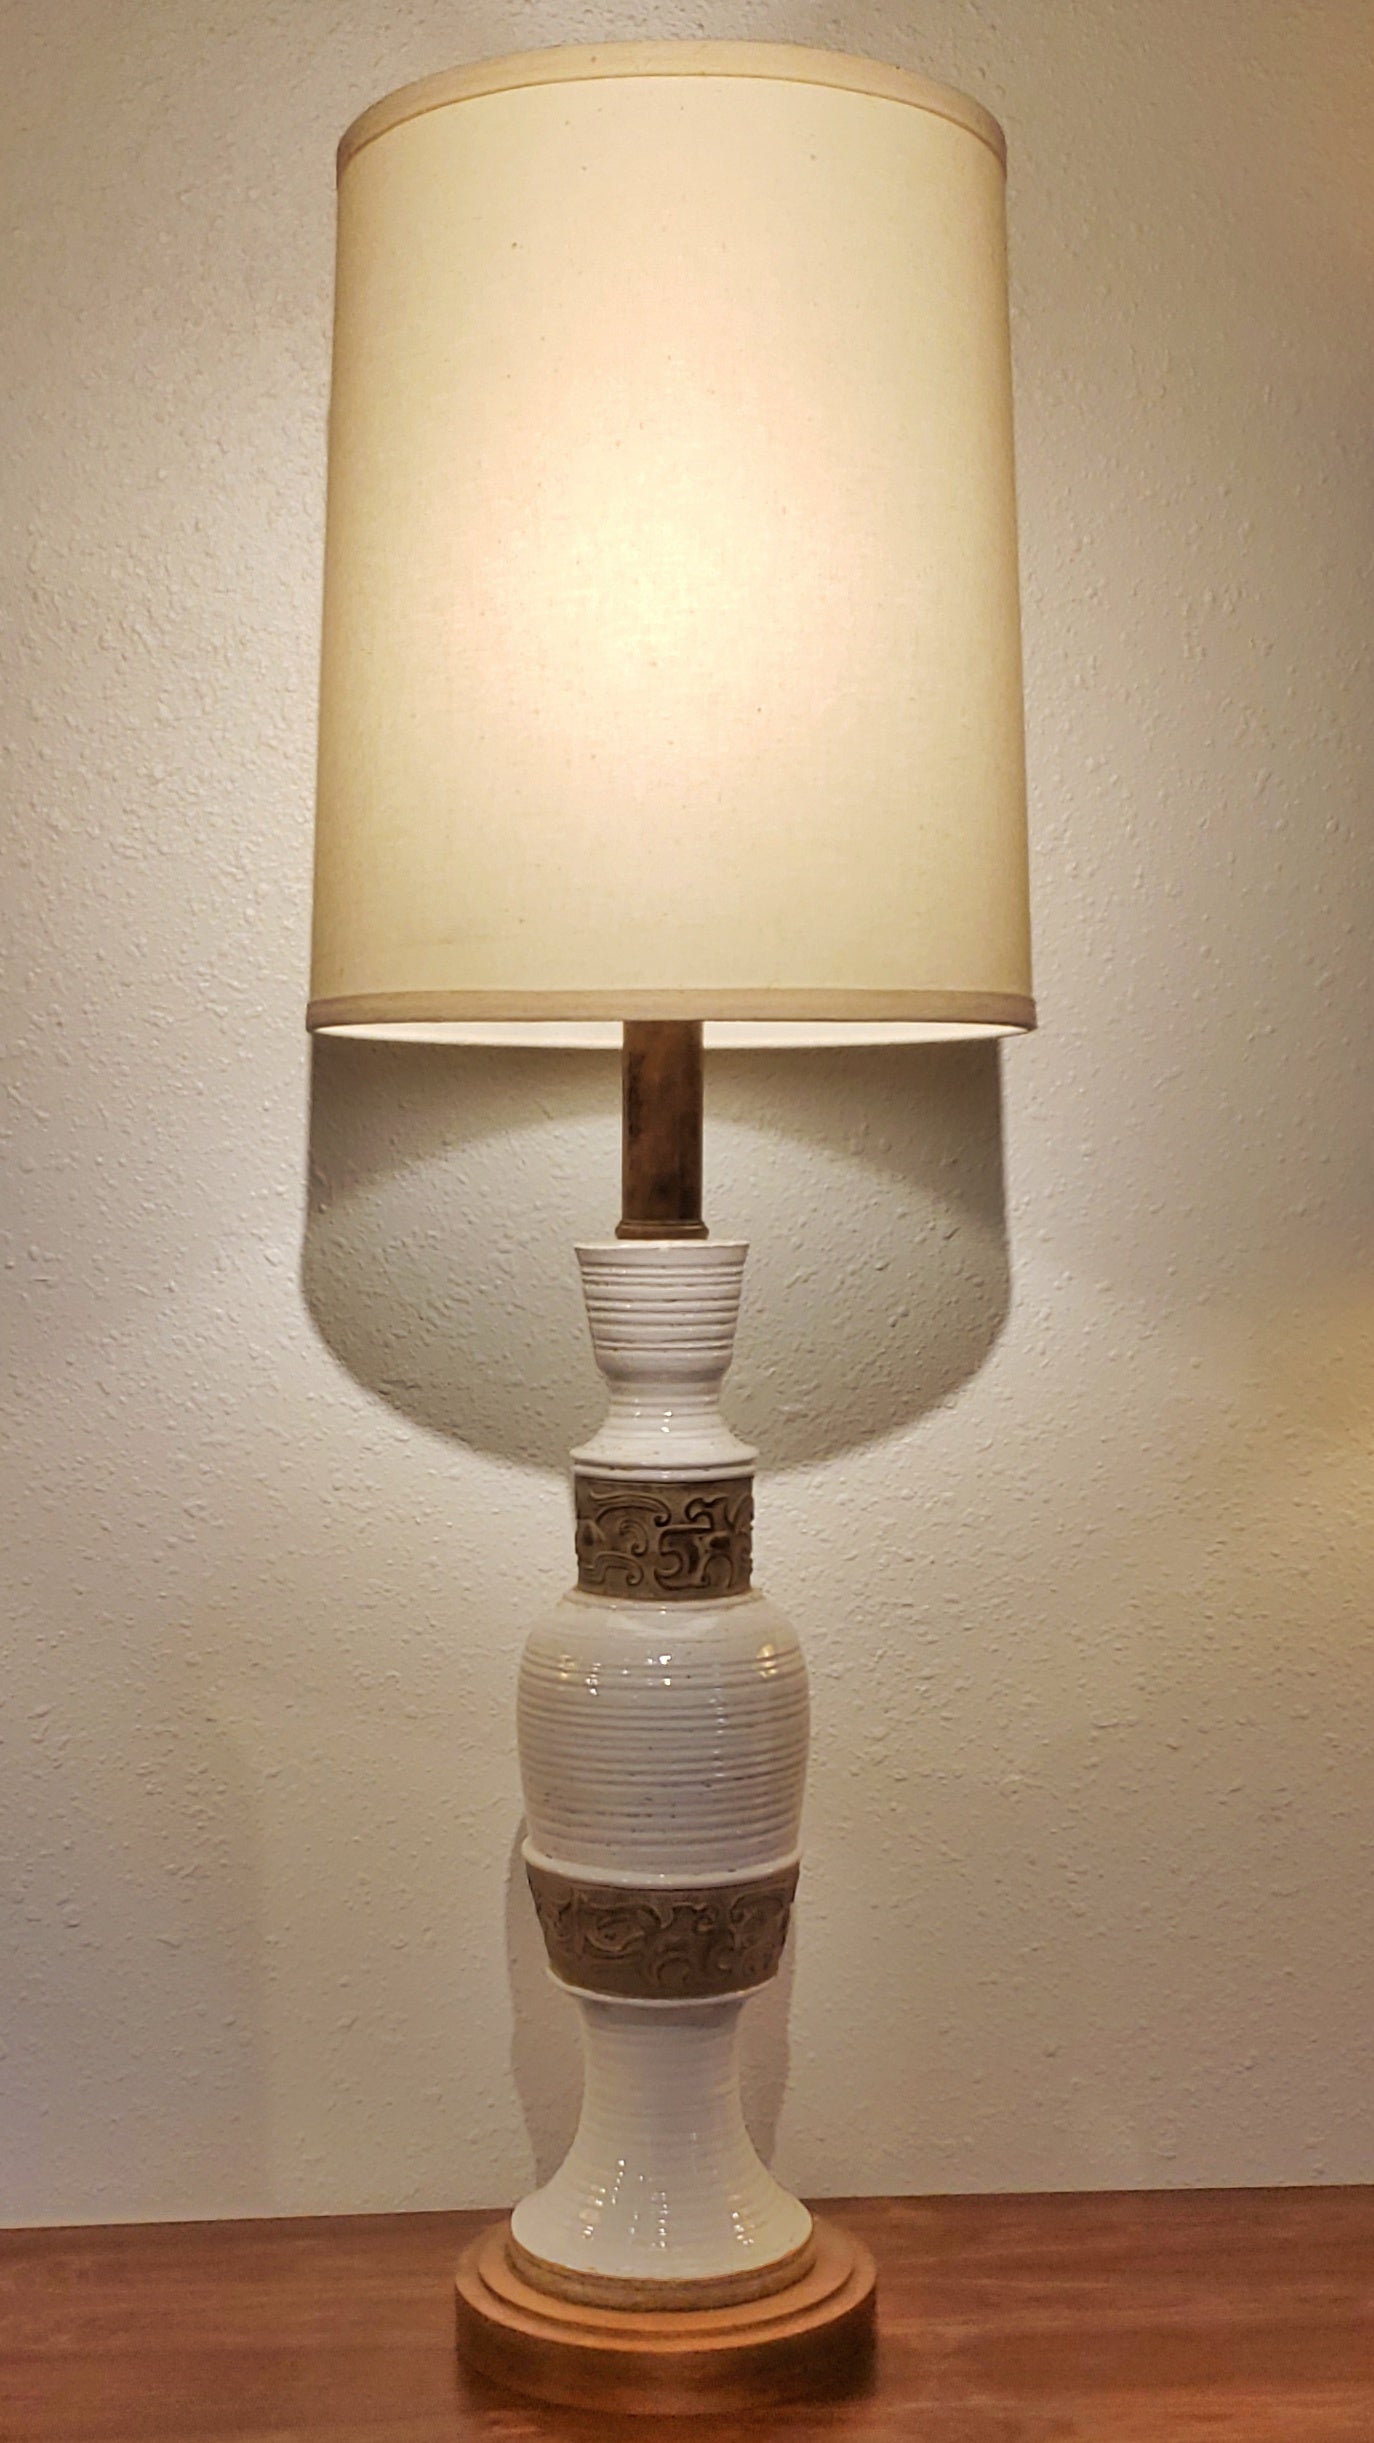 URBANO ZACCAGNINI TABLE LAMP (1940s)